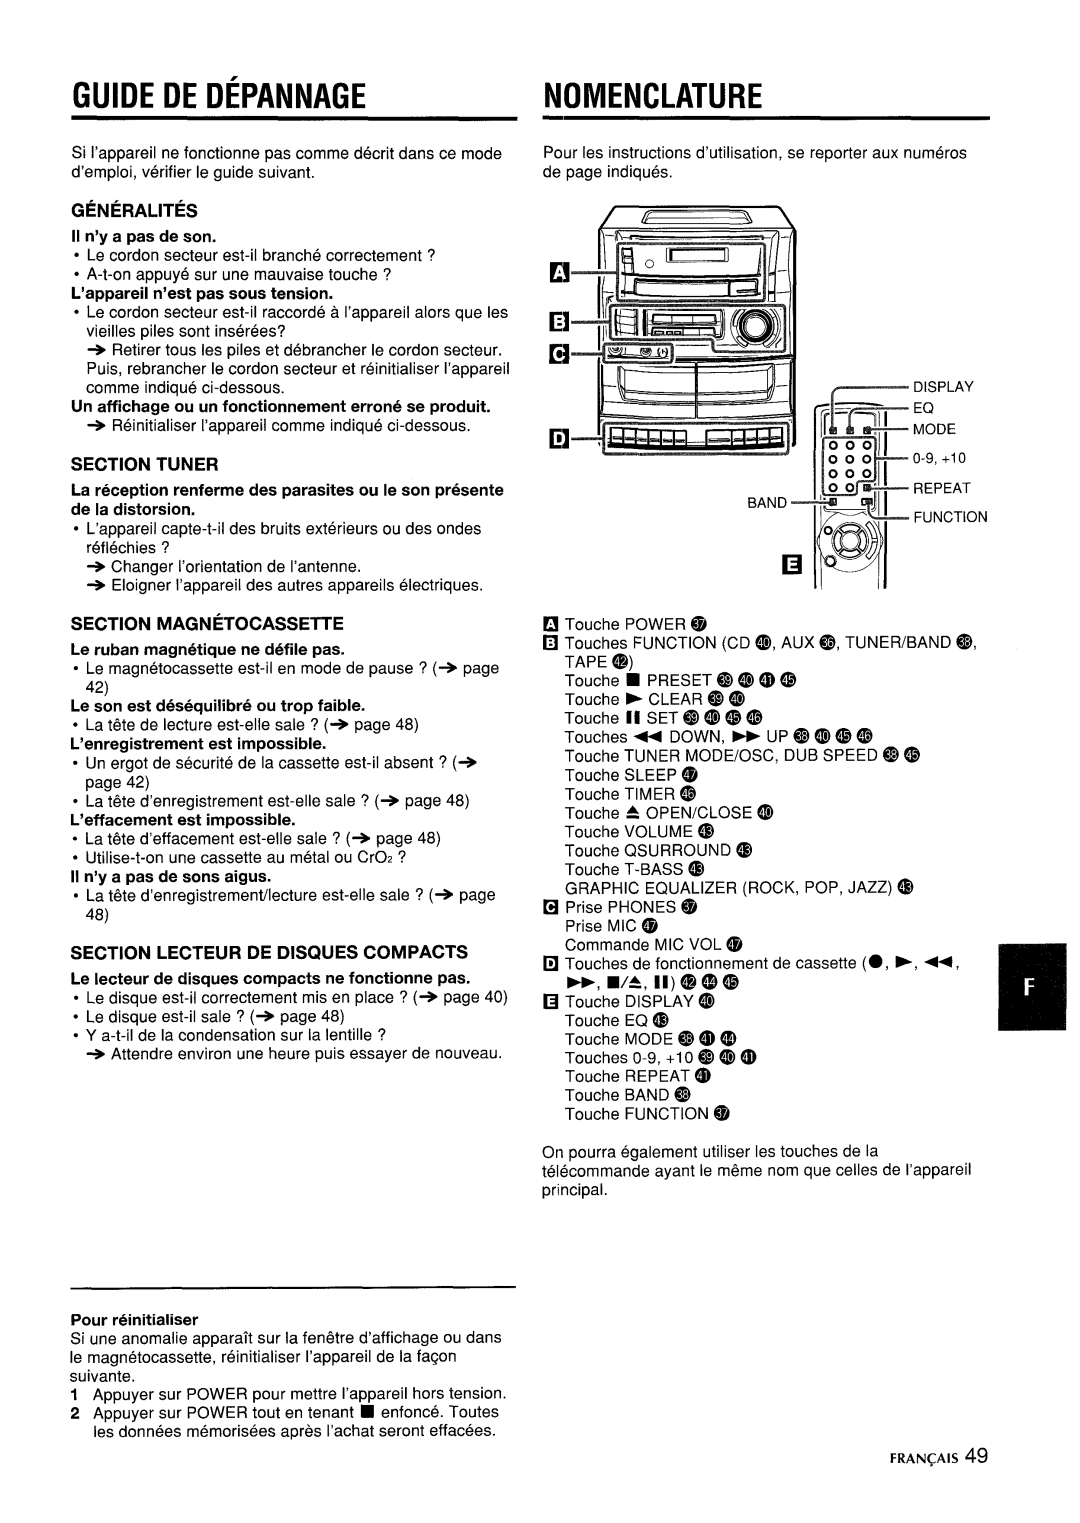 Aiwa CA-DW635 Guide De Depannage, Nomenclature, L’appareil n’est pas sous tension, Section Lecteur De Disques Compacts 